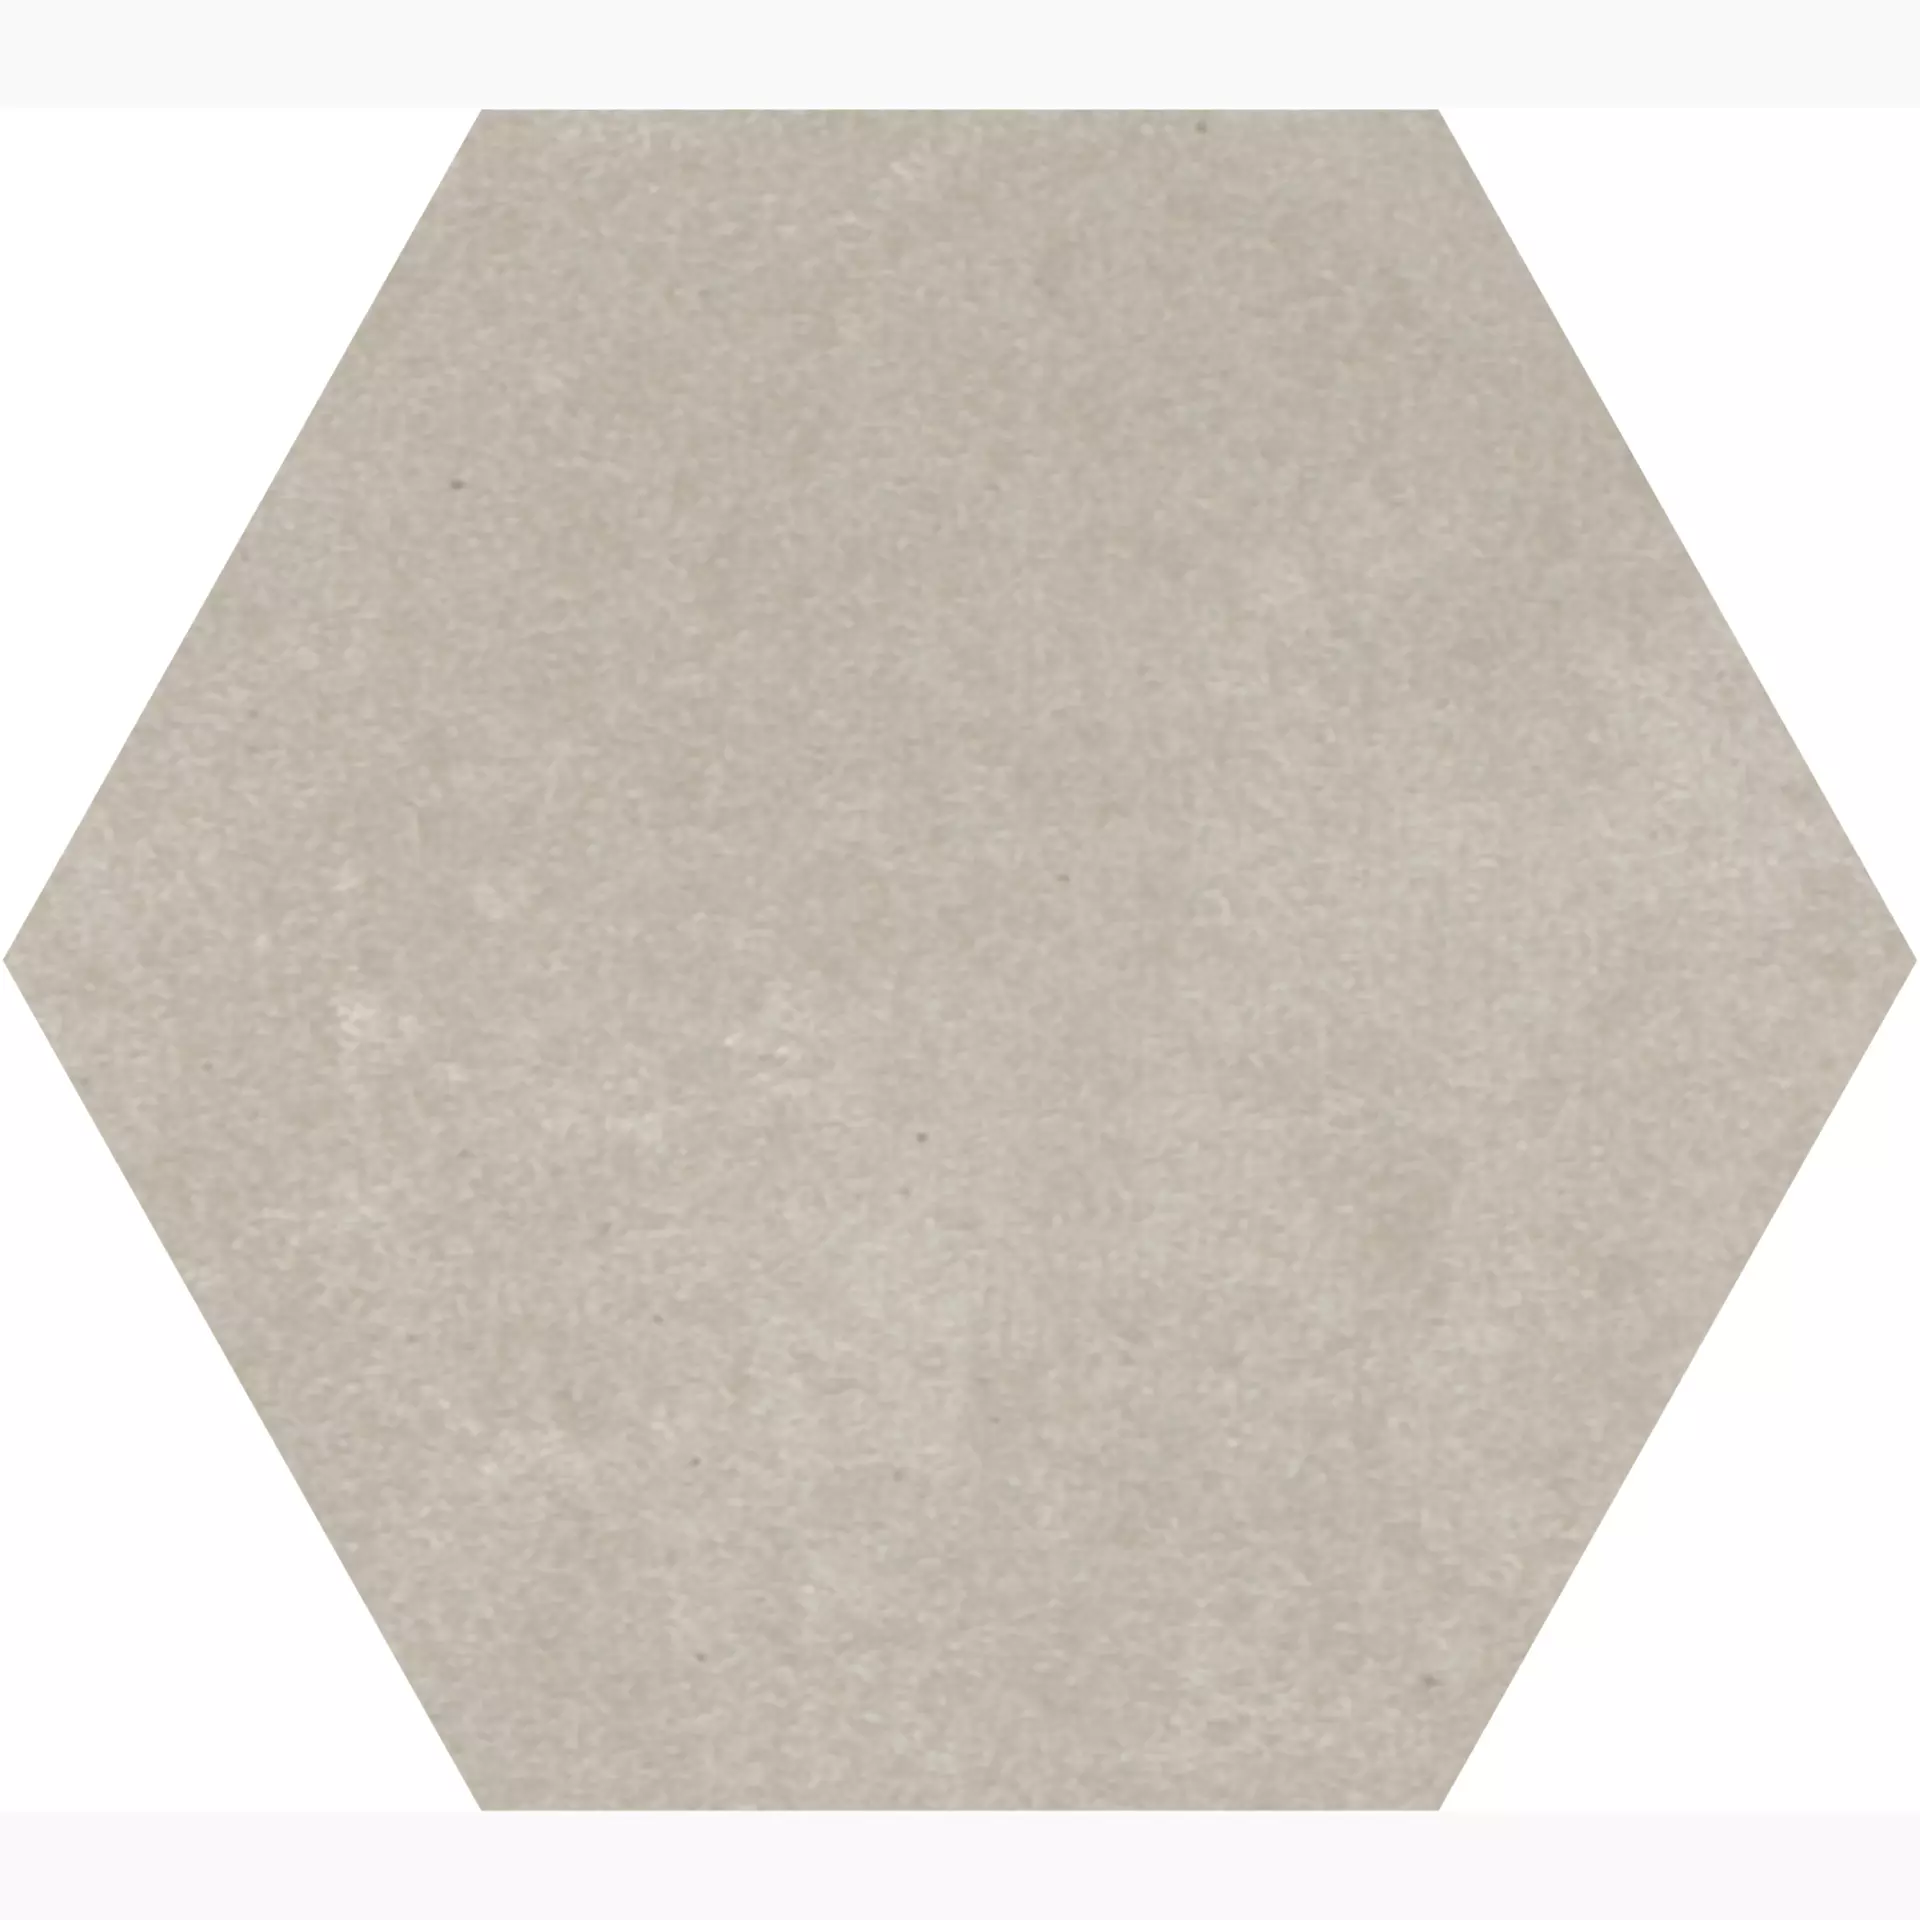 Gigacer Concrete Dust Matt Dust PO9ESADUST matt 16x18cm Small Hexagon 4,8mm